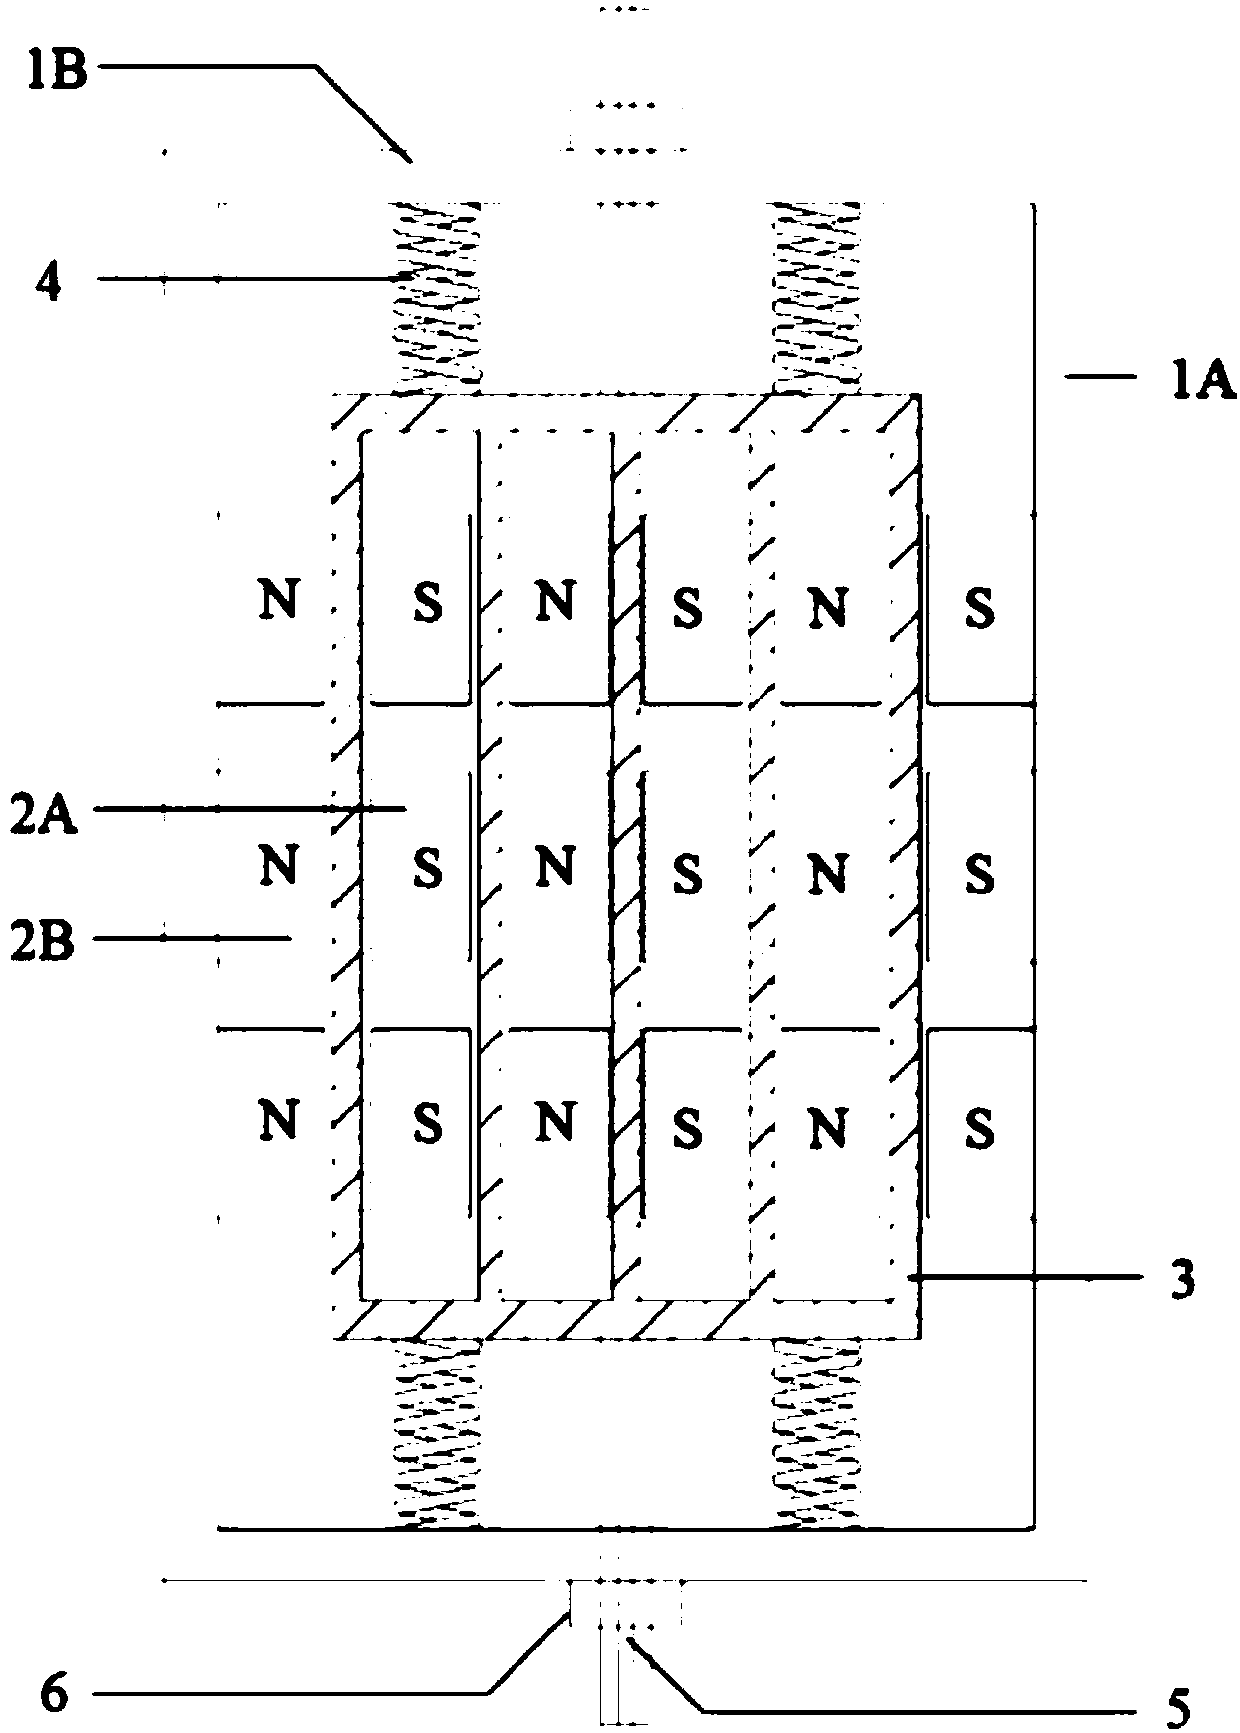 A semi-active vibration control eddy current damper